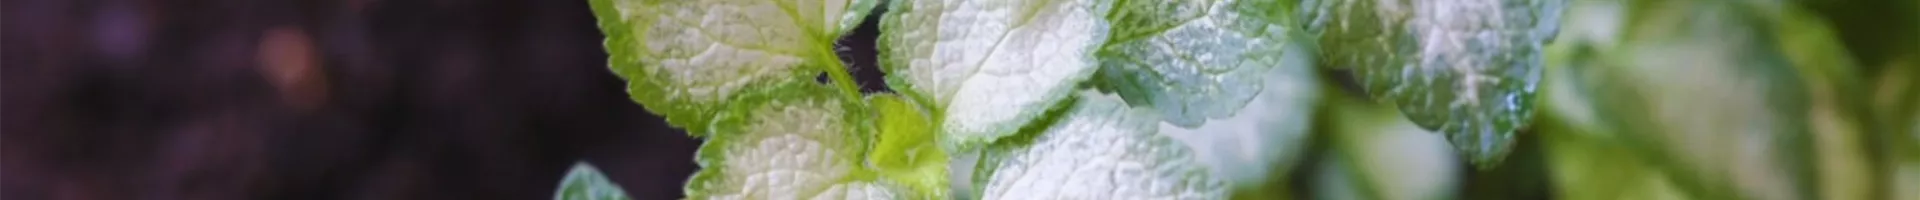 Taubnessel - Einpflanzen im Garten (Thumbnail).jpg